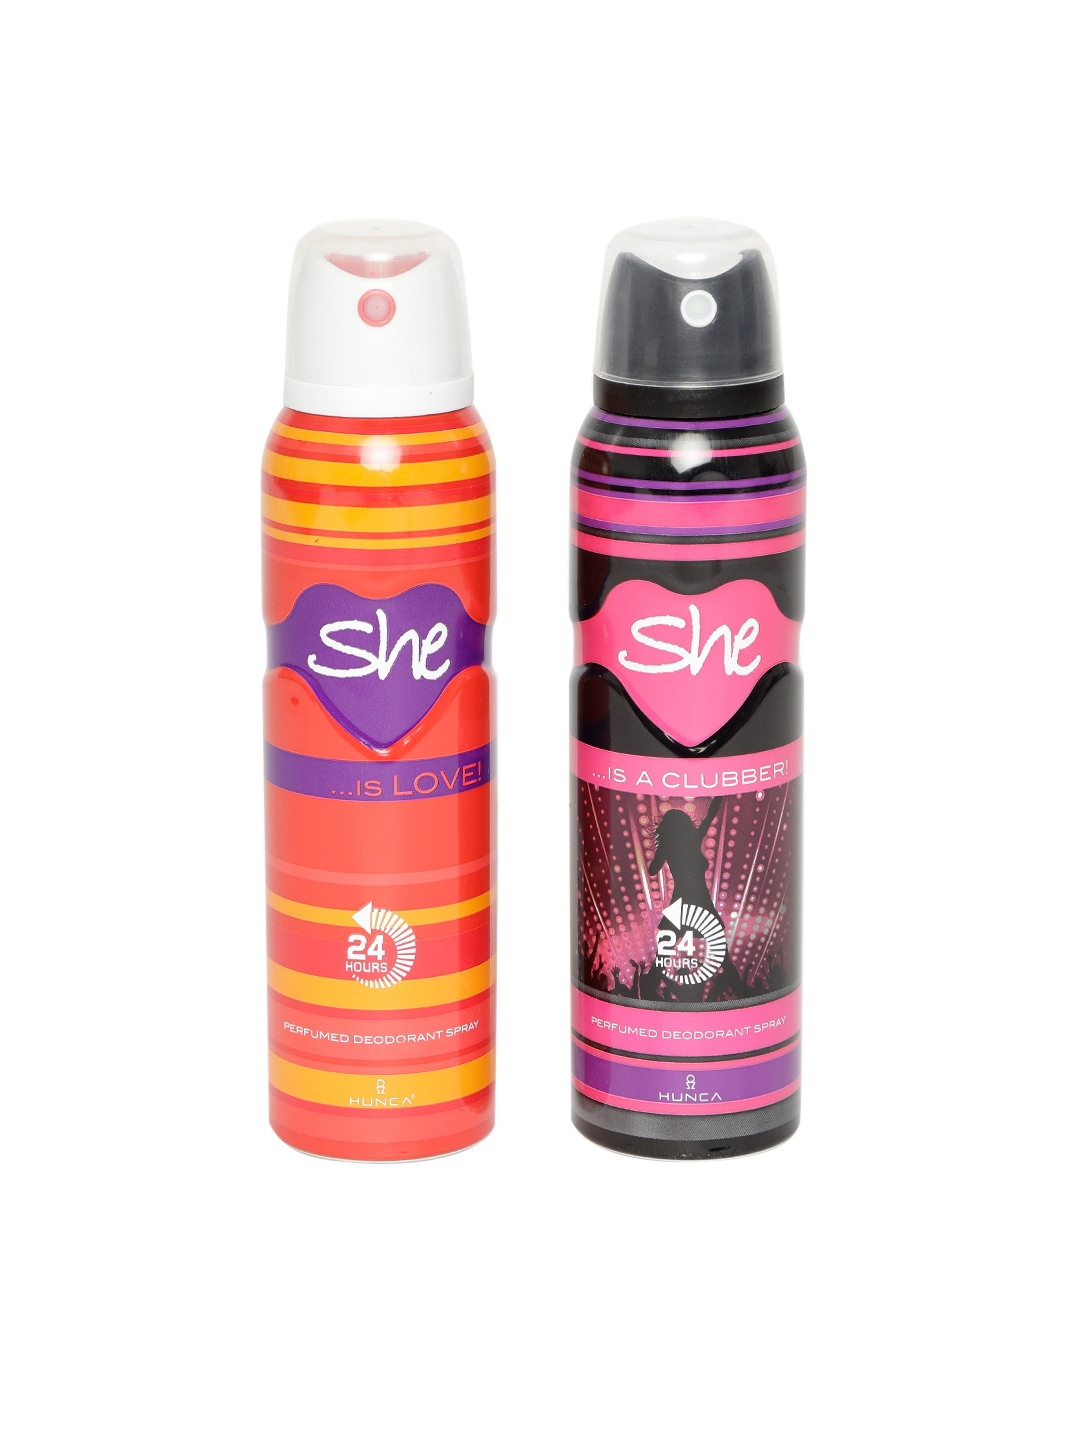 Women's Deodorant Sprays